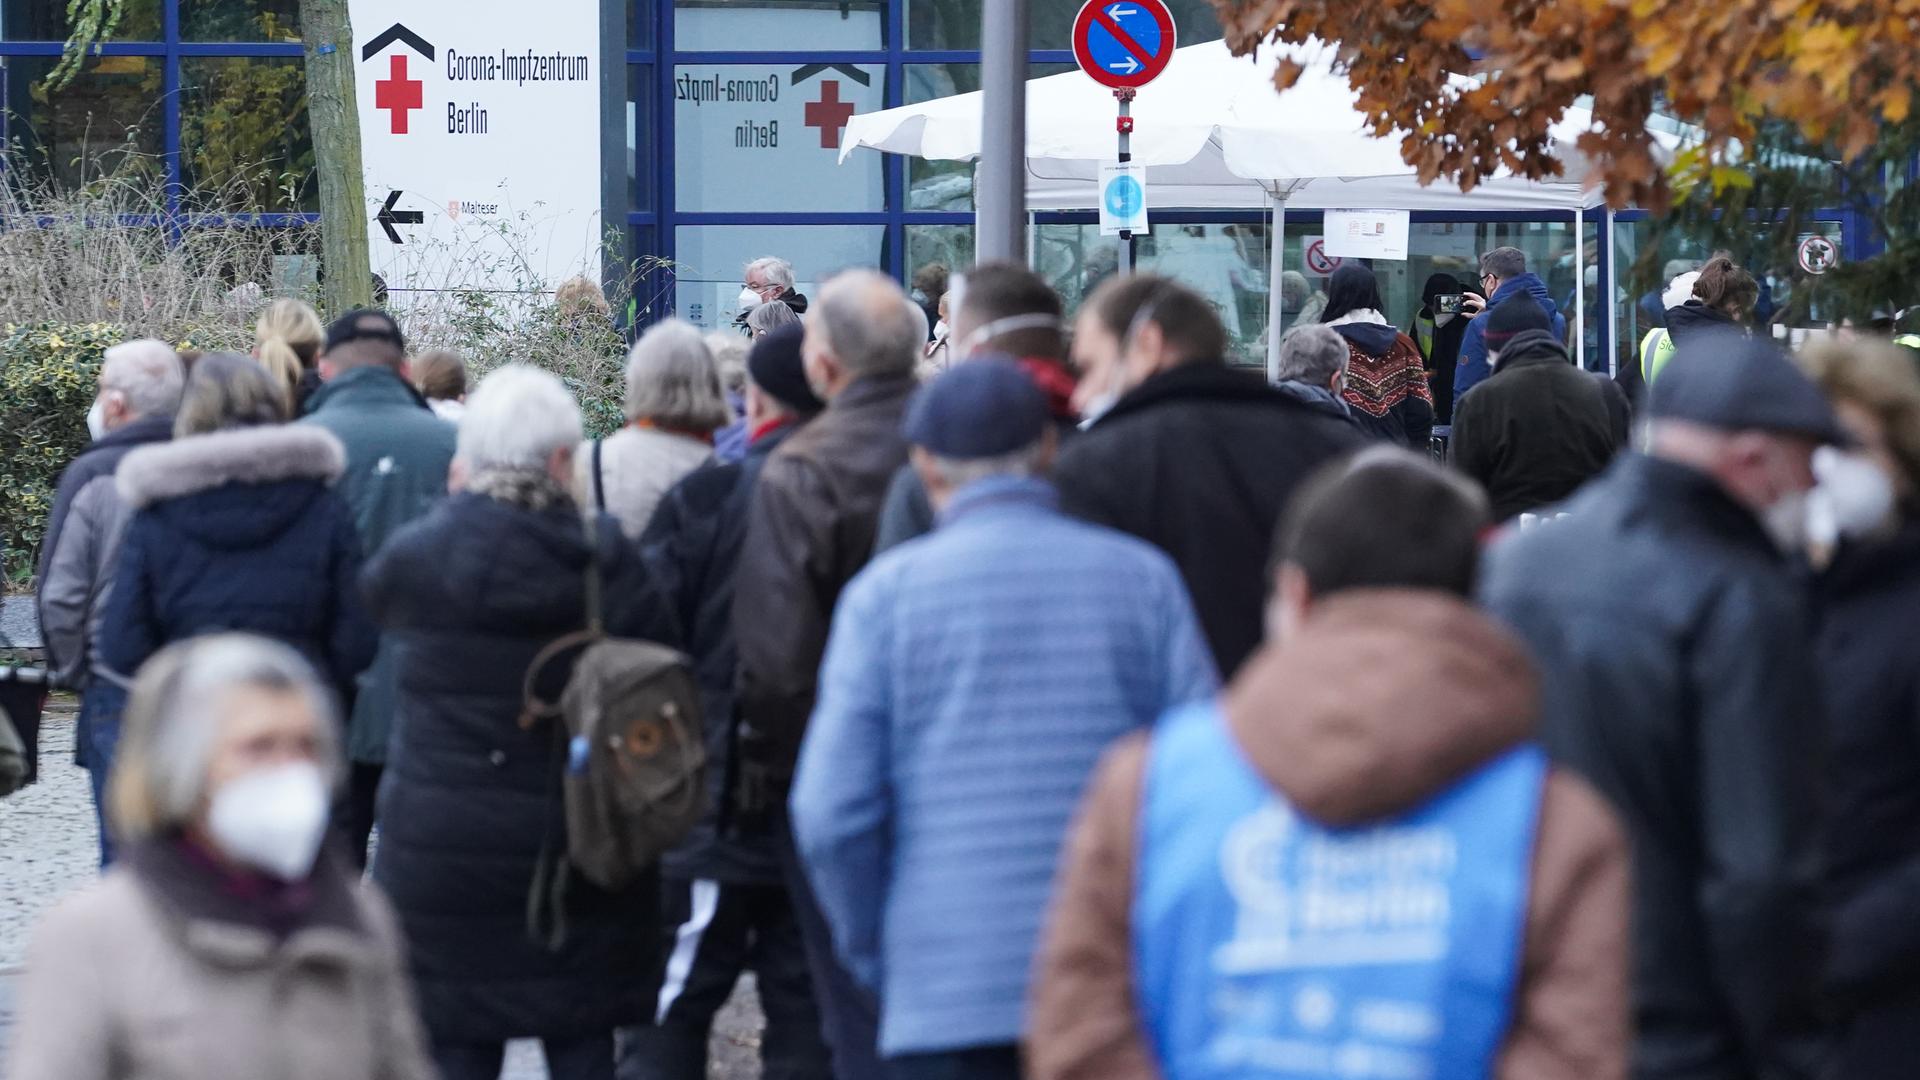 Zahlreiche Menschen in Winterjacken warten vor dem Impfzentrum in Berlin